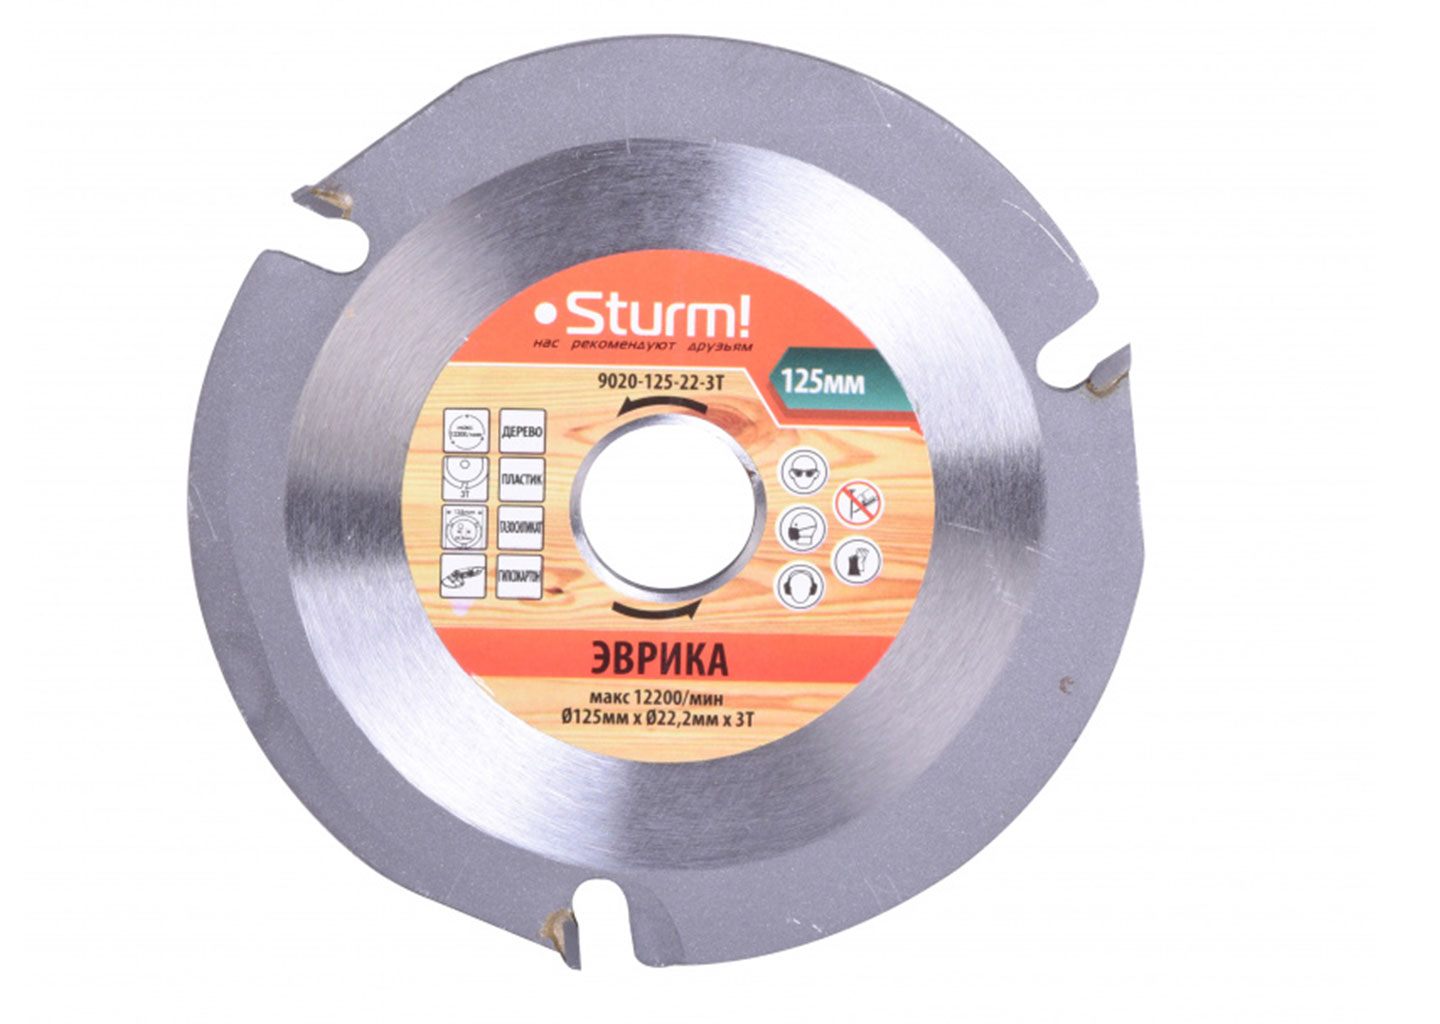 Пильный диск по дереву для УШМ Sturm! 9020-125-22-3T